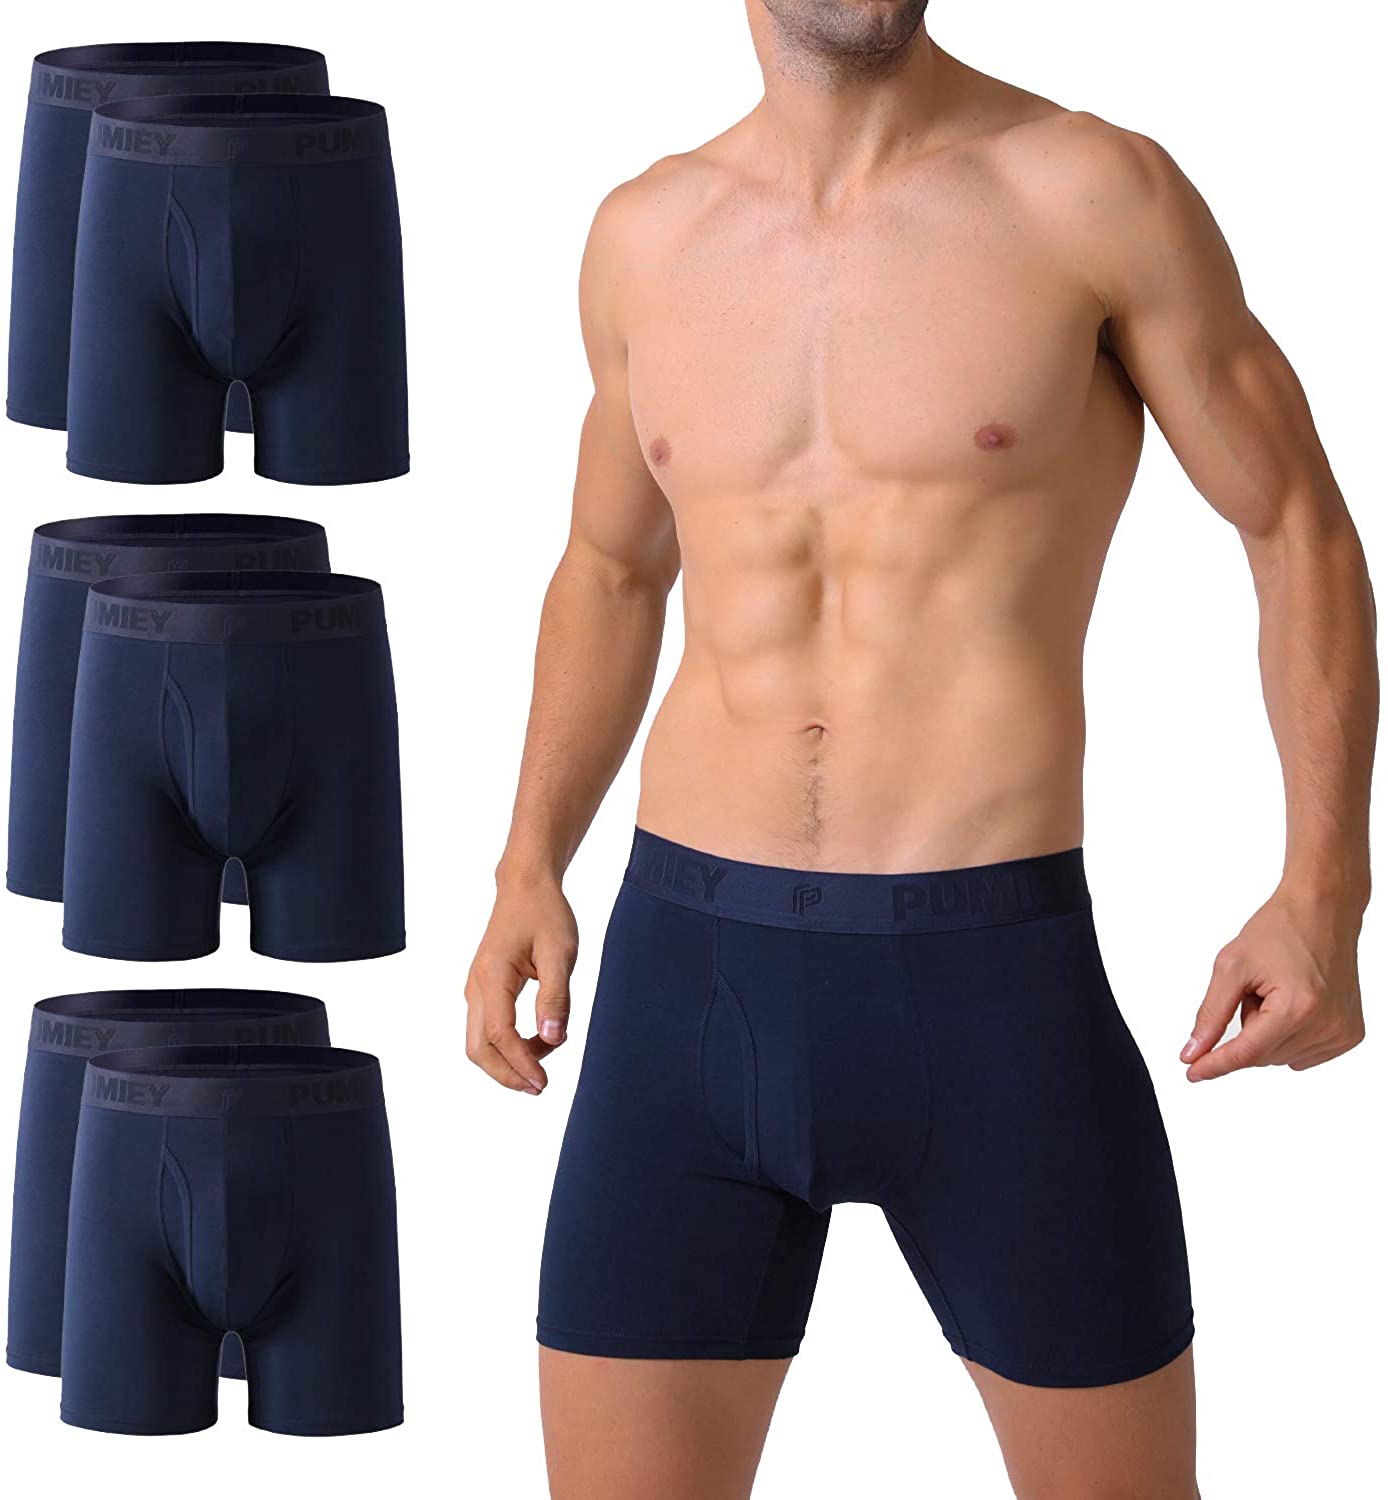 PUMIEY Mens Underwear Boxer Briefs Cotton No Ride Up, Dark Blue, Size ...